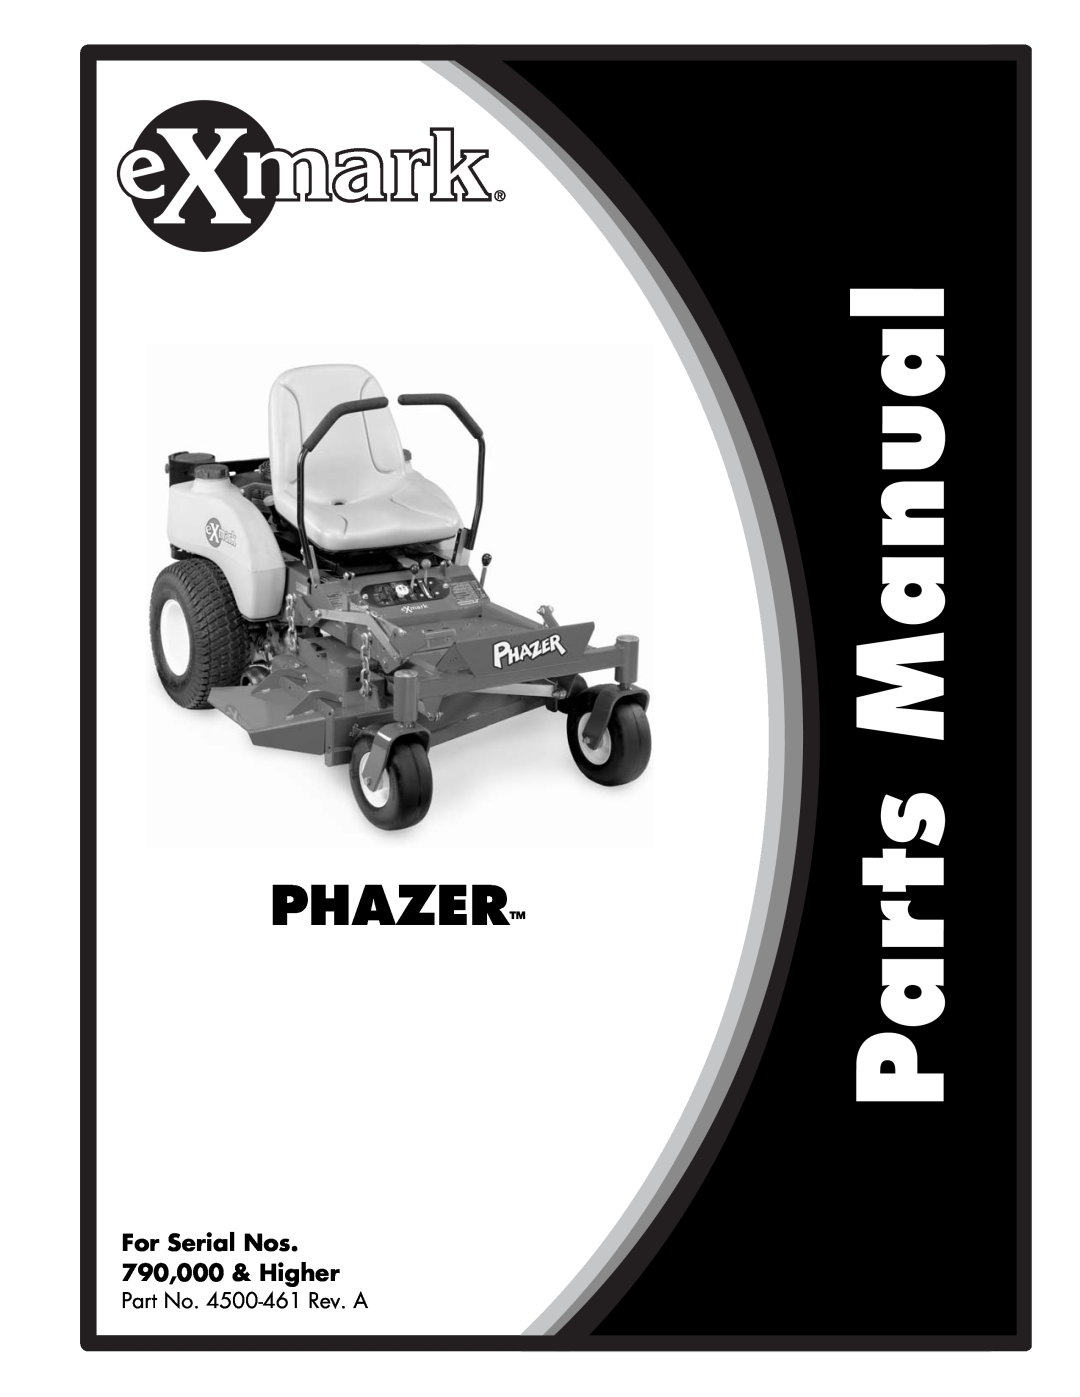 Exmark manual Part No. 4500-461 Rev. A, Phazer, For Serial Nos 790,000 & Higher 